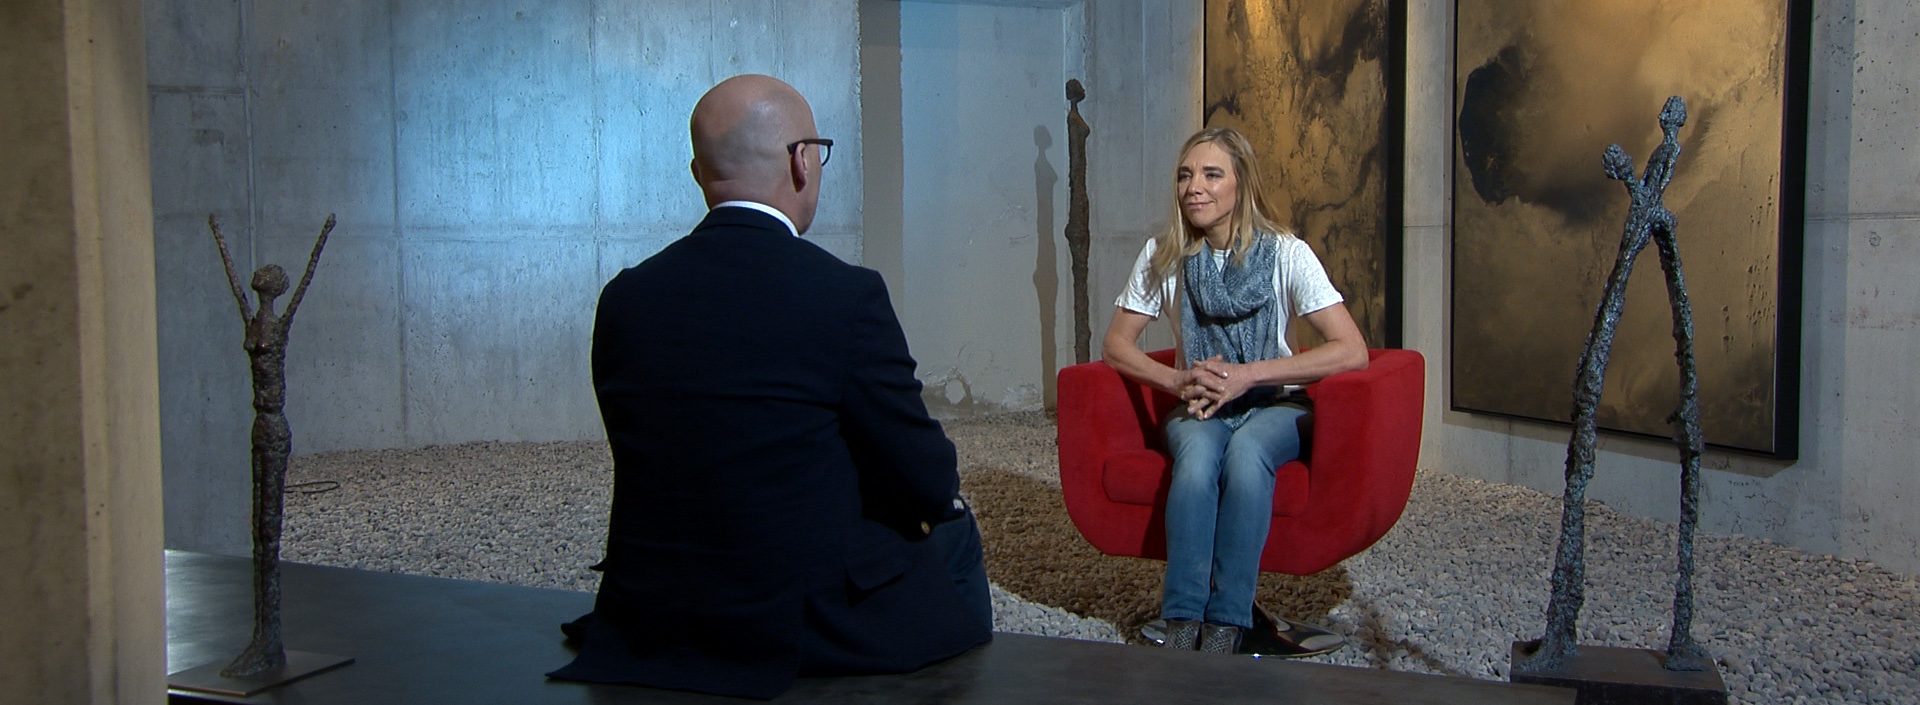 Heidi Sand sitzt in einer Kunstgalerie im Roten Sessel für ein Interview